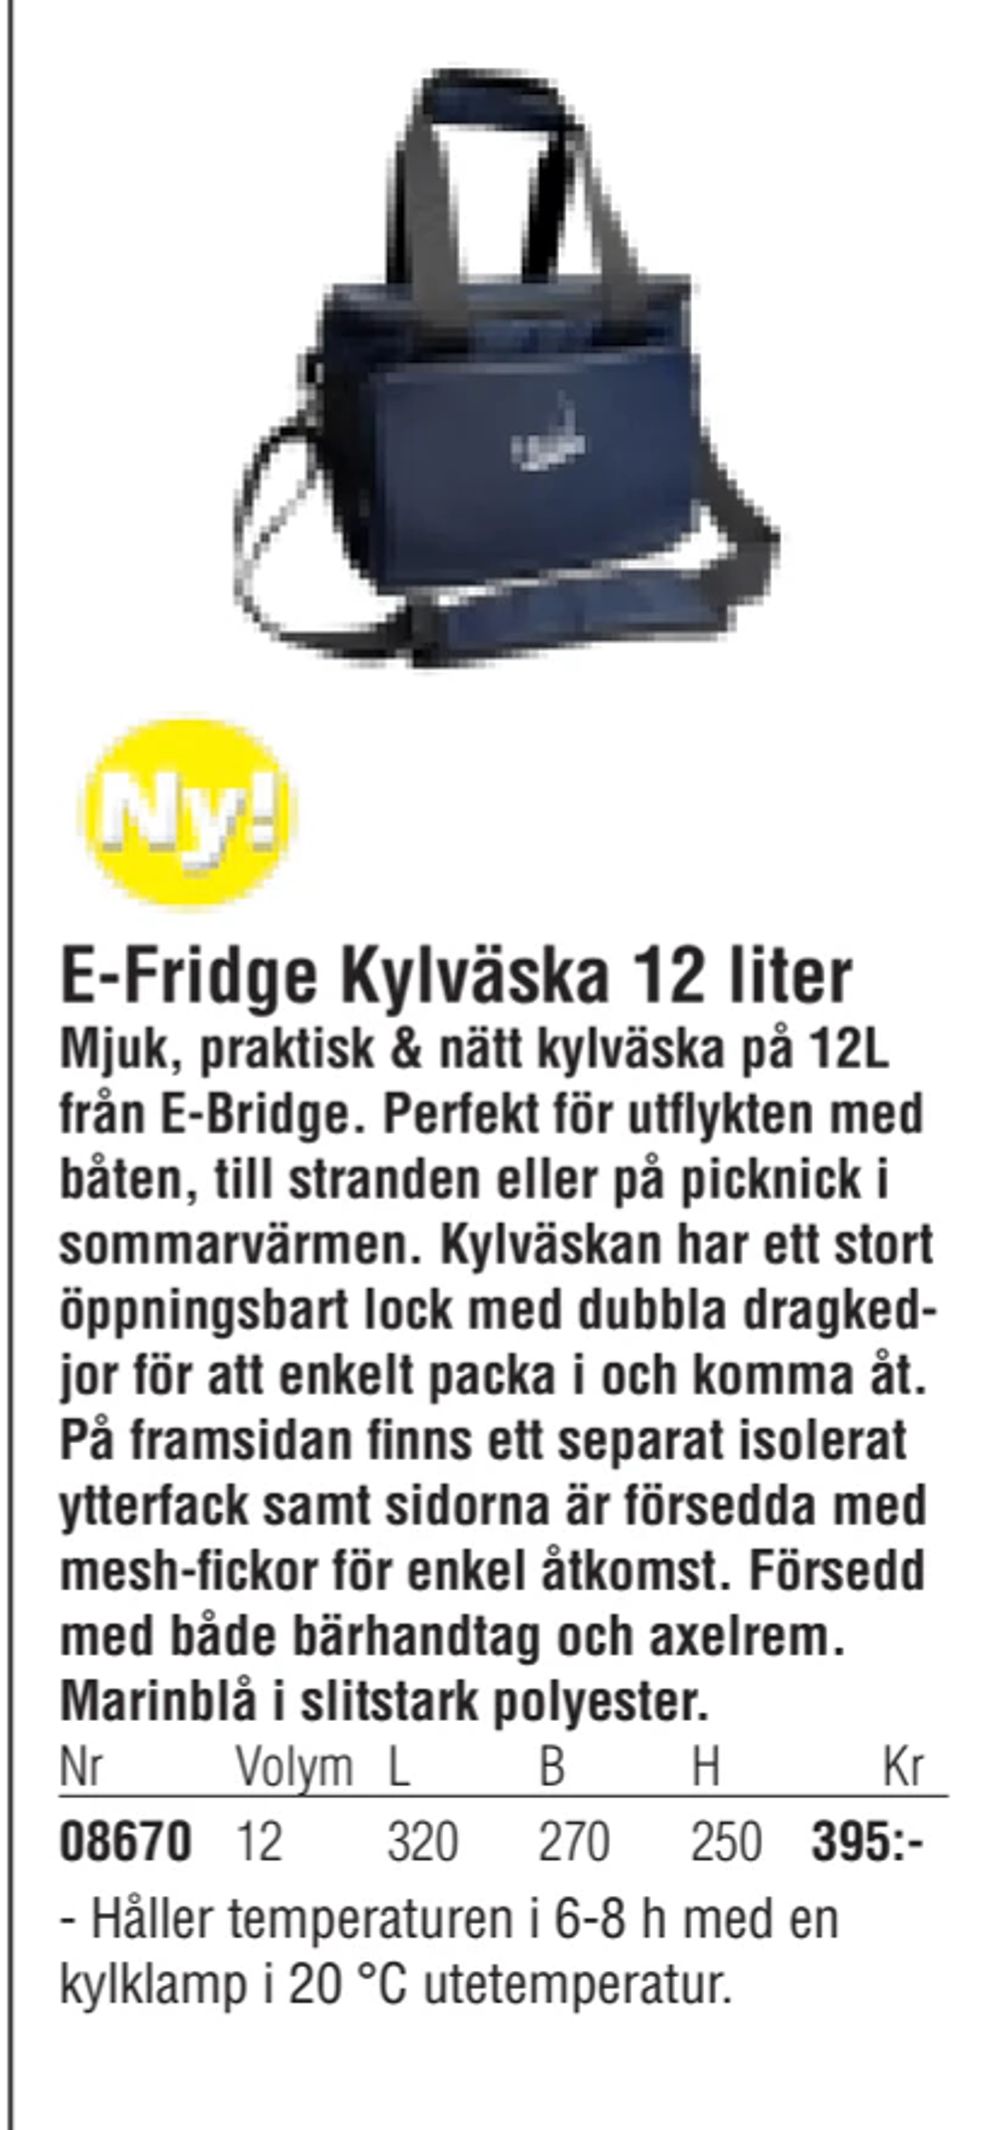 Erbjudanden på E-Fridge Kylväska 12 liter från Erlandsons Brygga för 395 kr